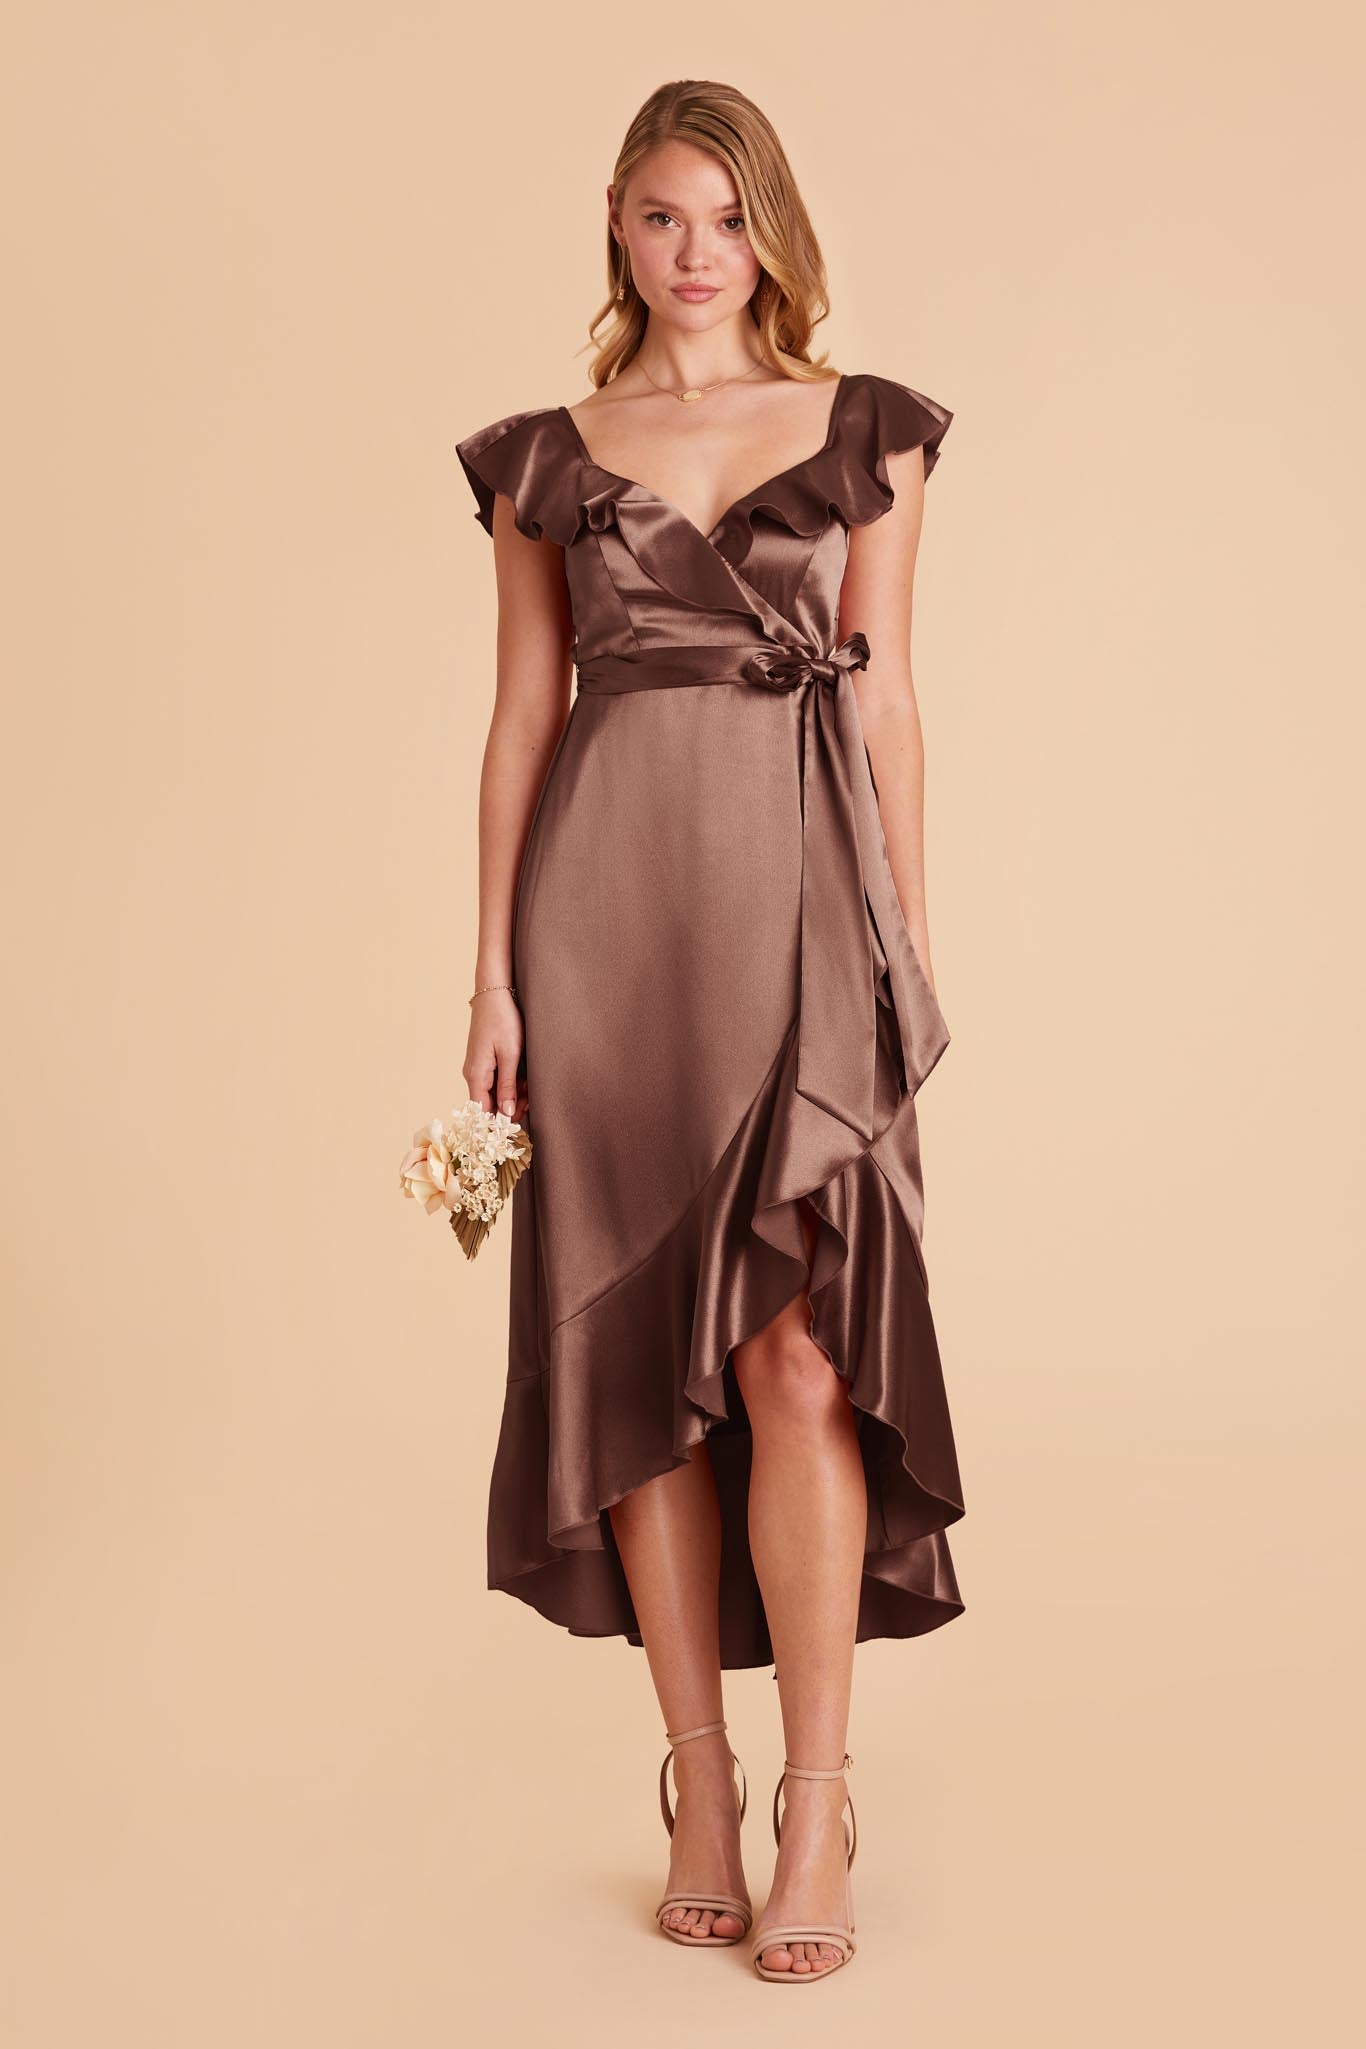 Chocolate Brown James Satin Midi Dress by Birdy Grey